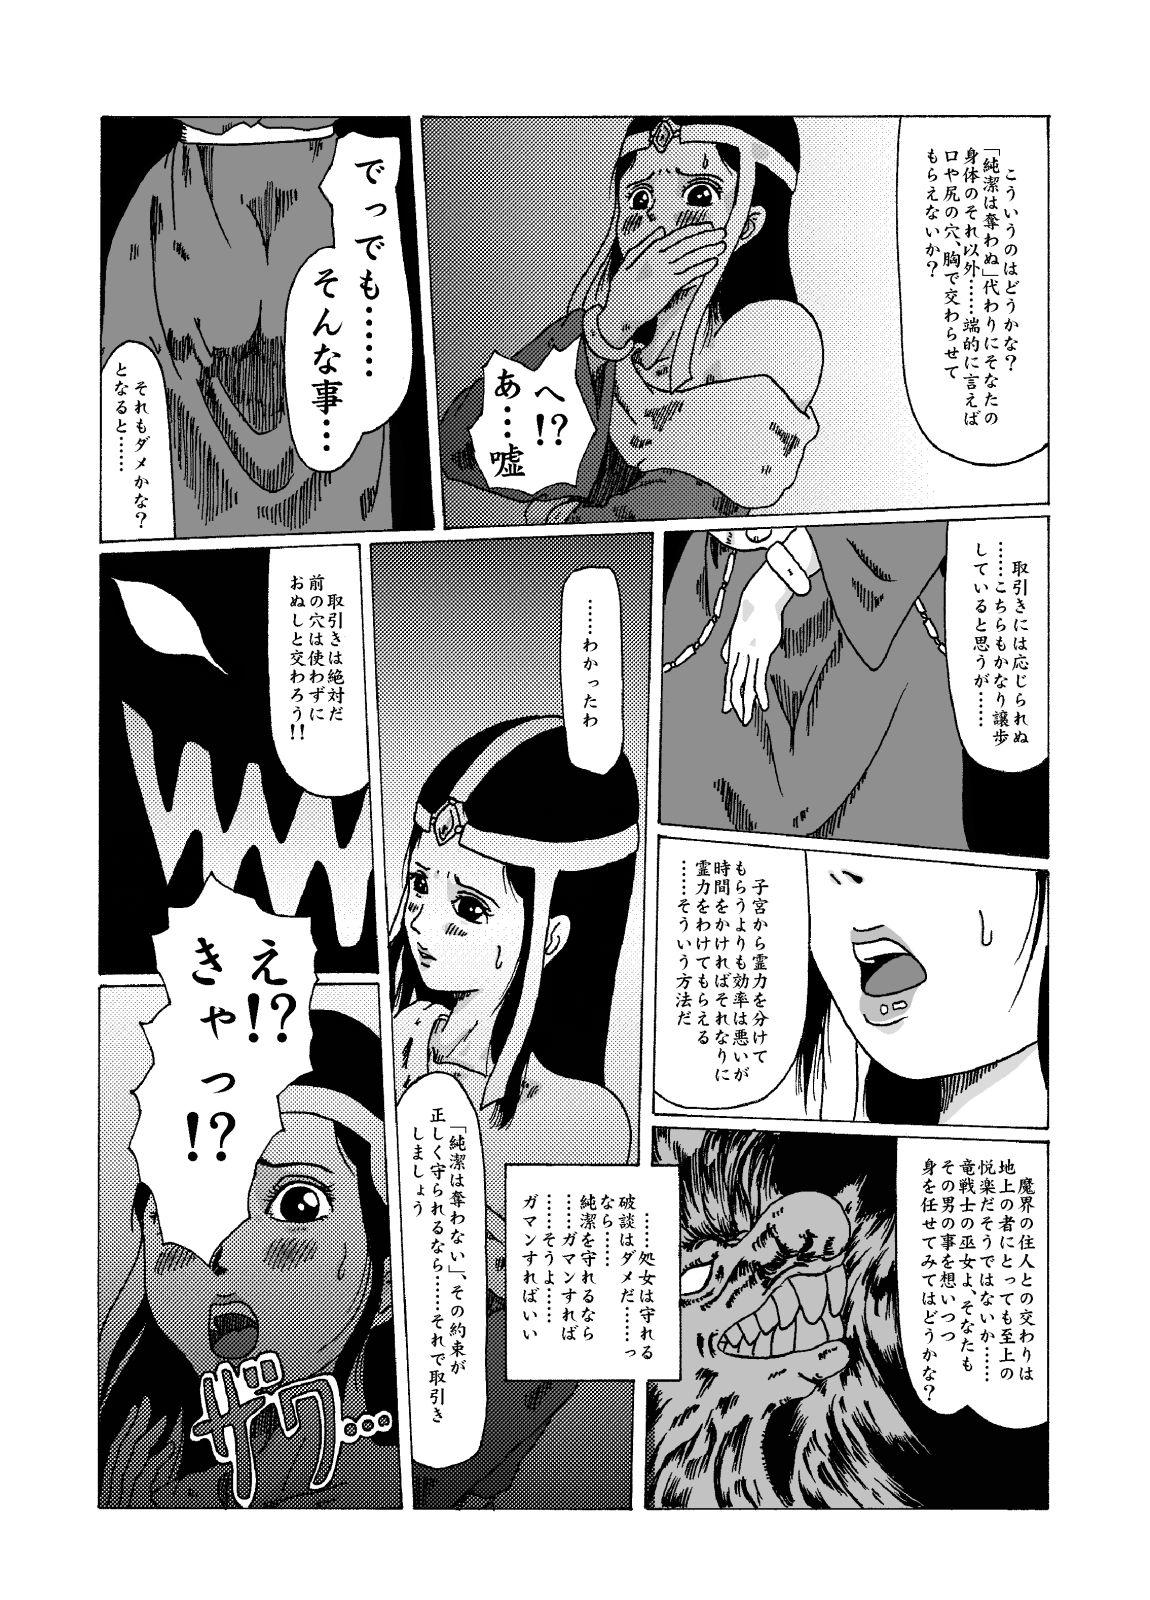 Skype meruru hakai-dragon qowst dai no daibouken ibunroku kijinro Sentando - Page 6